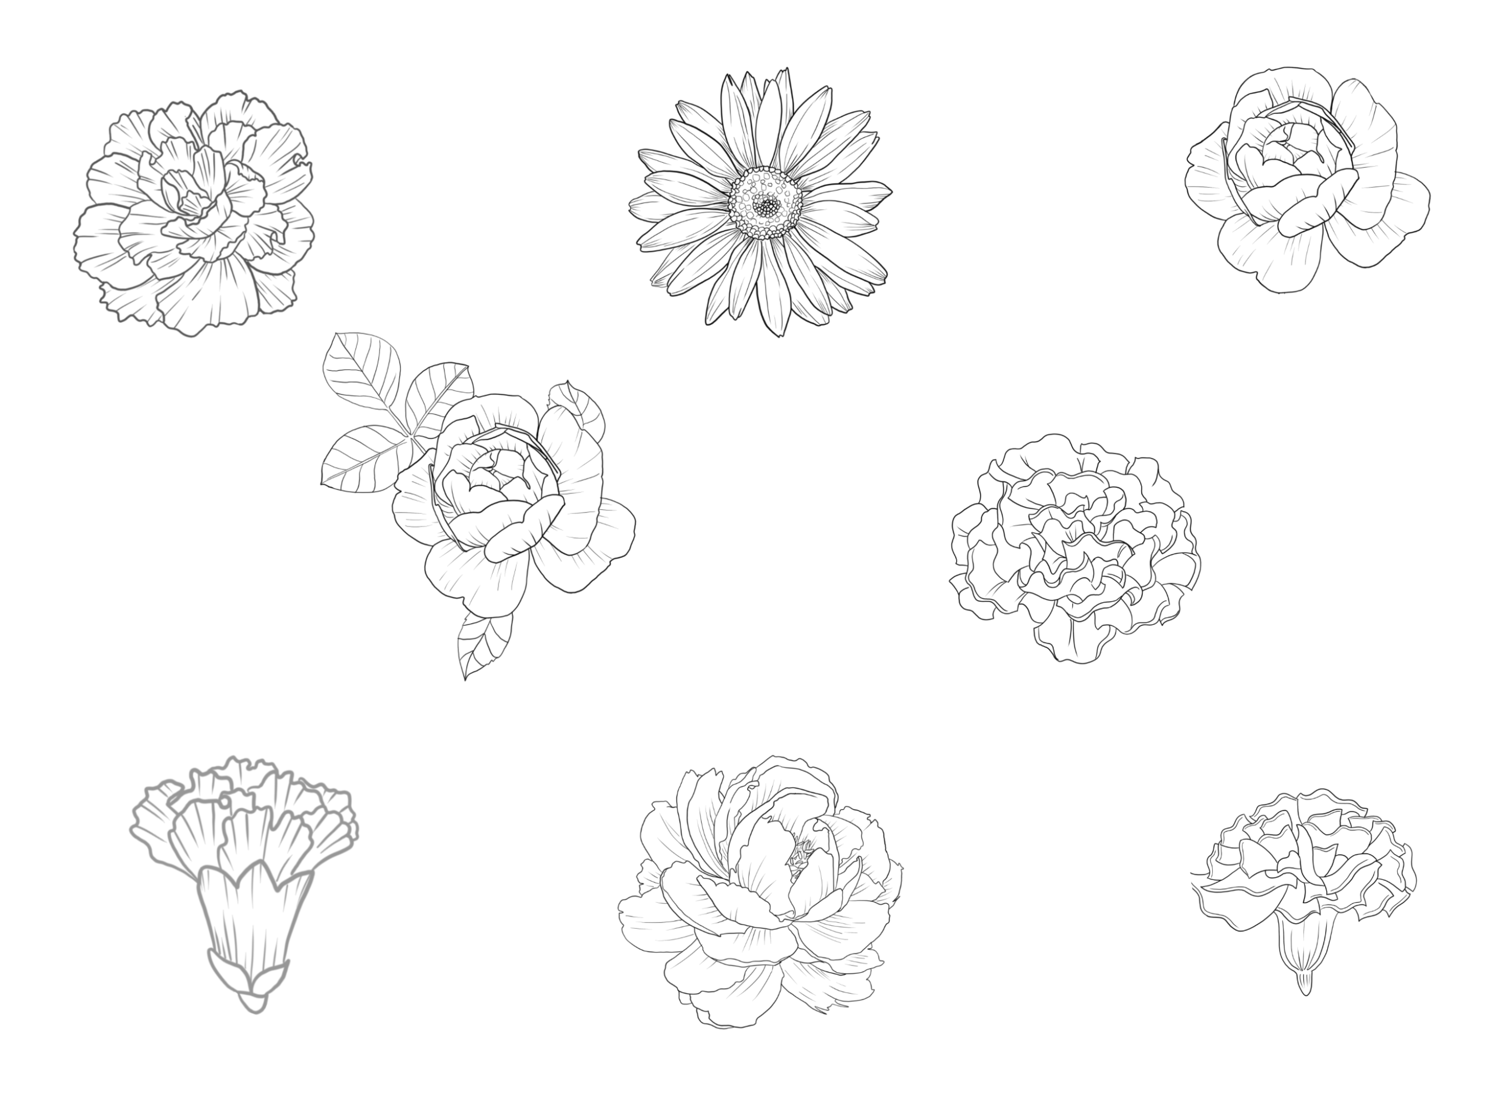 Botanic florals stamps, Flower stamps, Flower png